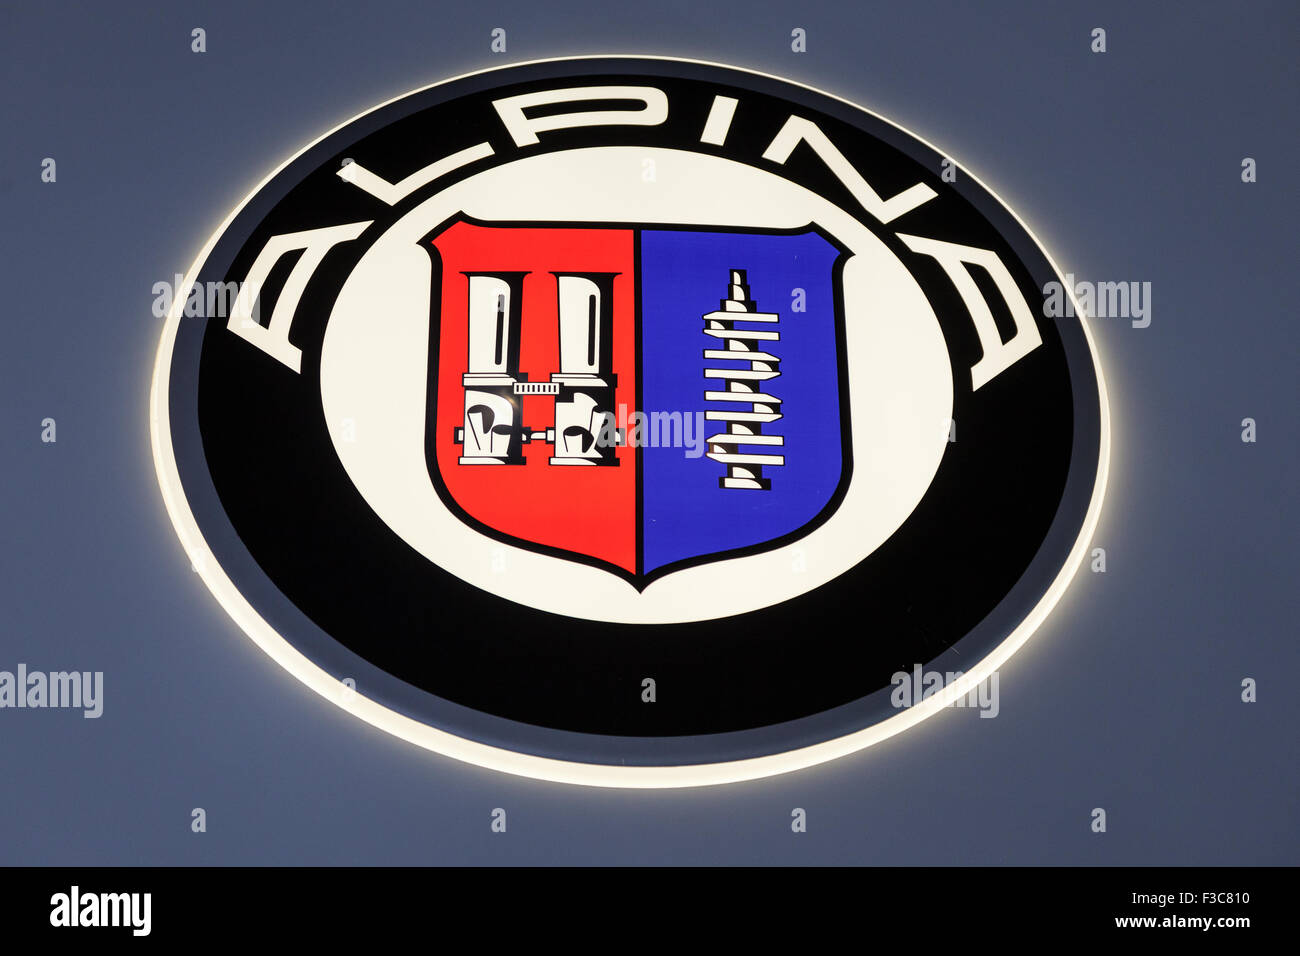 BMW Alpina Company Logo at the IAA International Motor Show 2015 Stock Photo